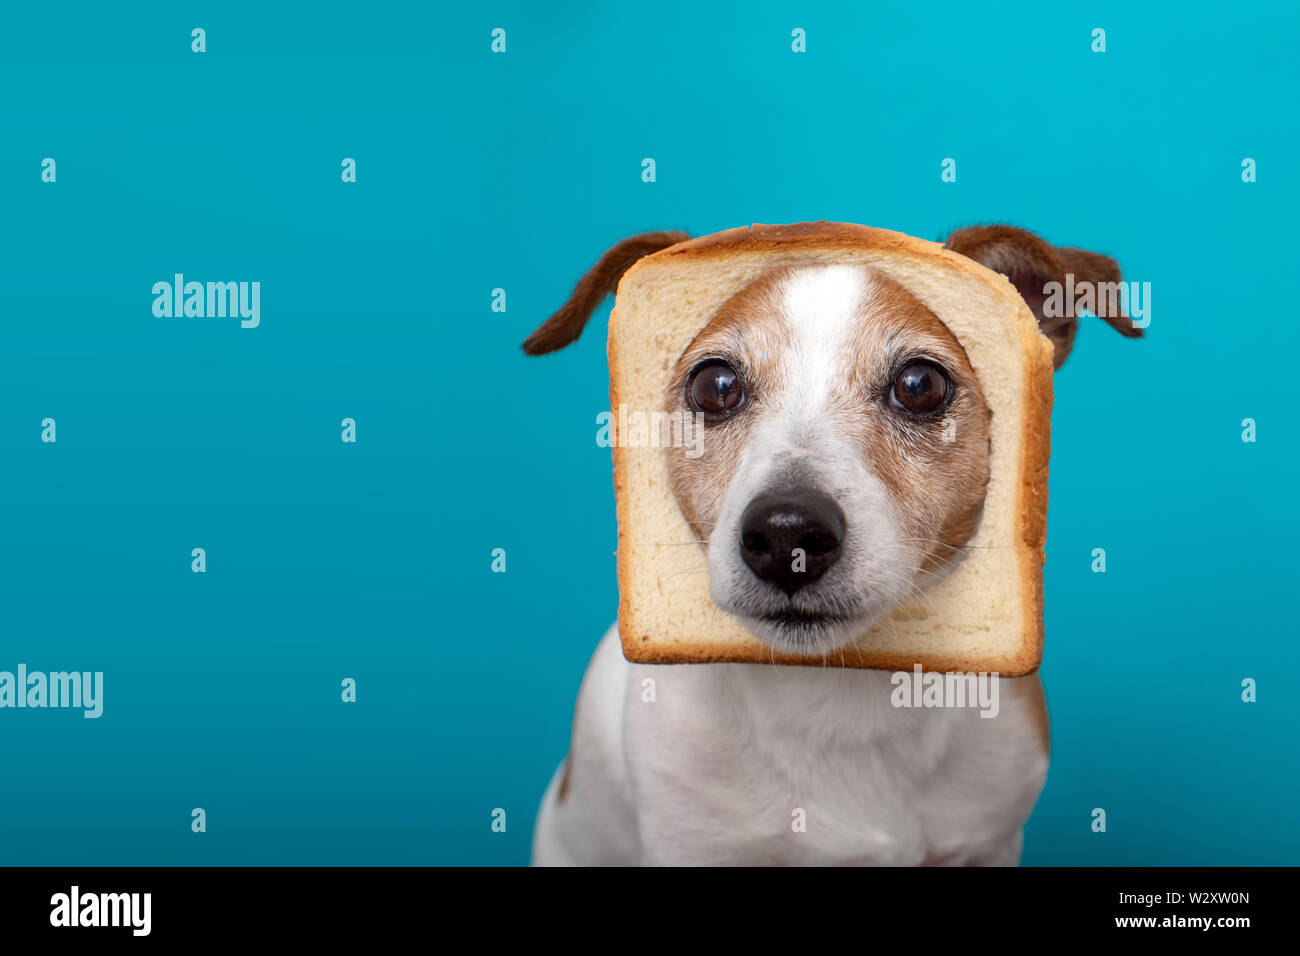 Cute dog wearing slice bread in head Stock Photo